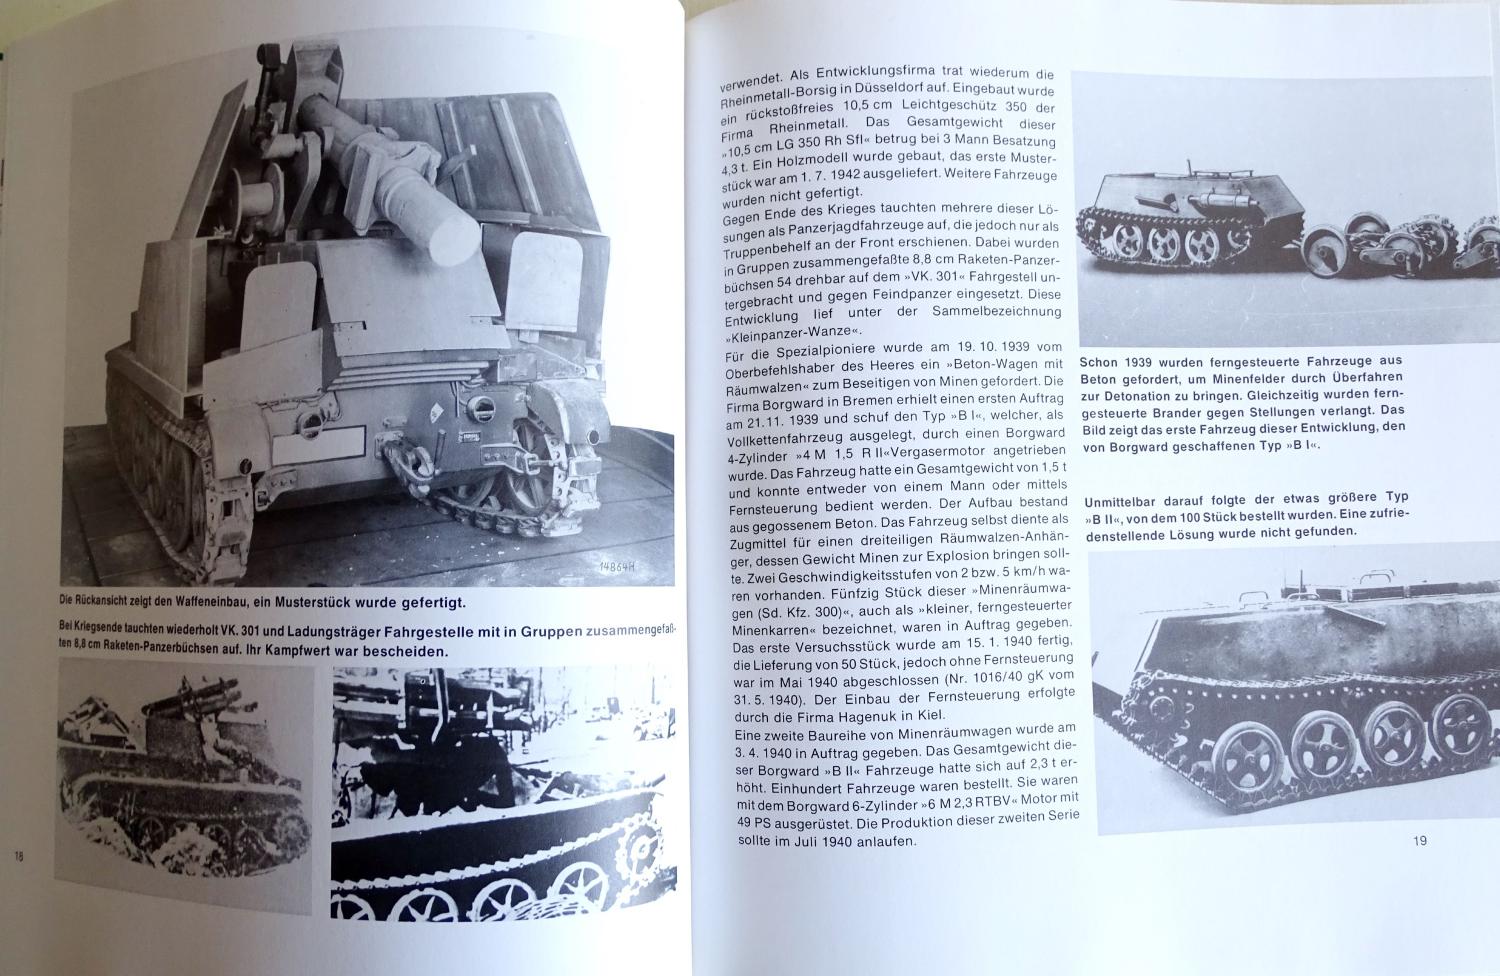 Spezial-panzerfahrzeuge des deutschen heeres J. Spielberger. Band 8